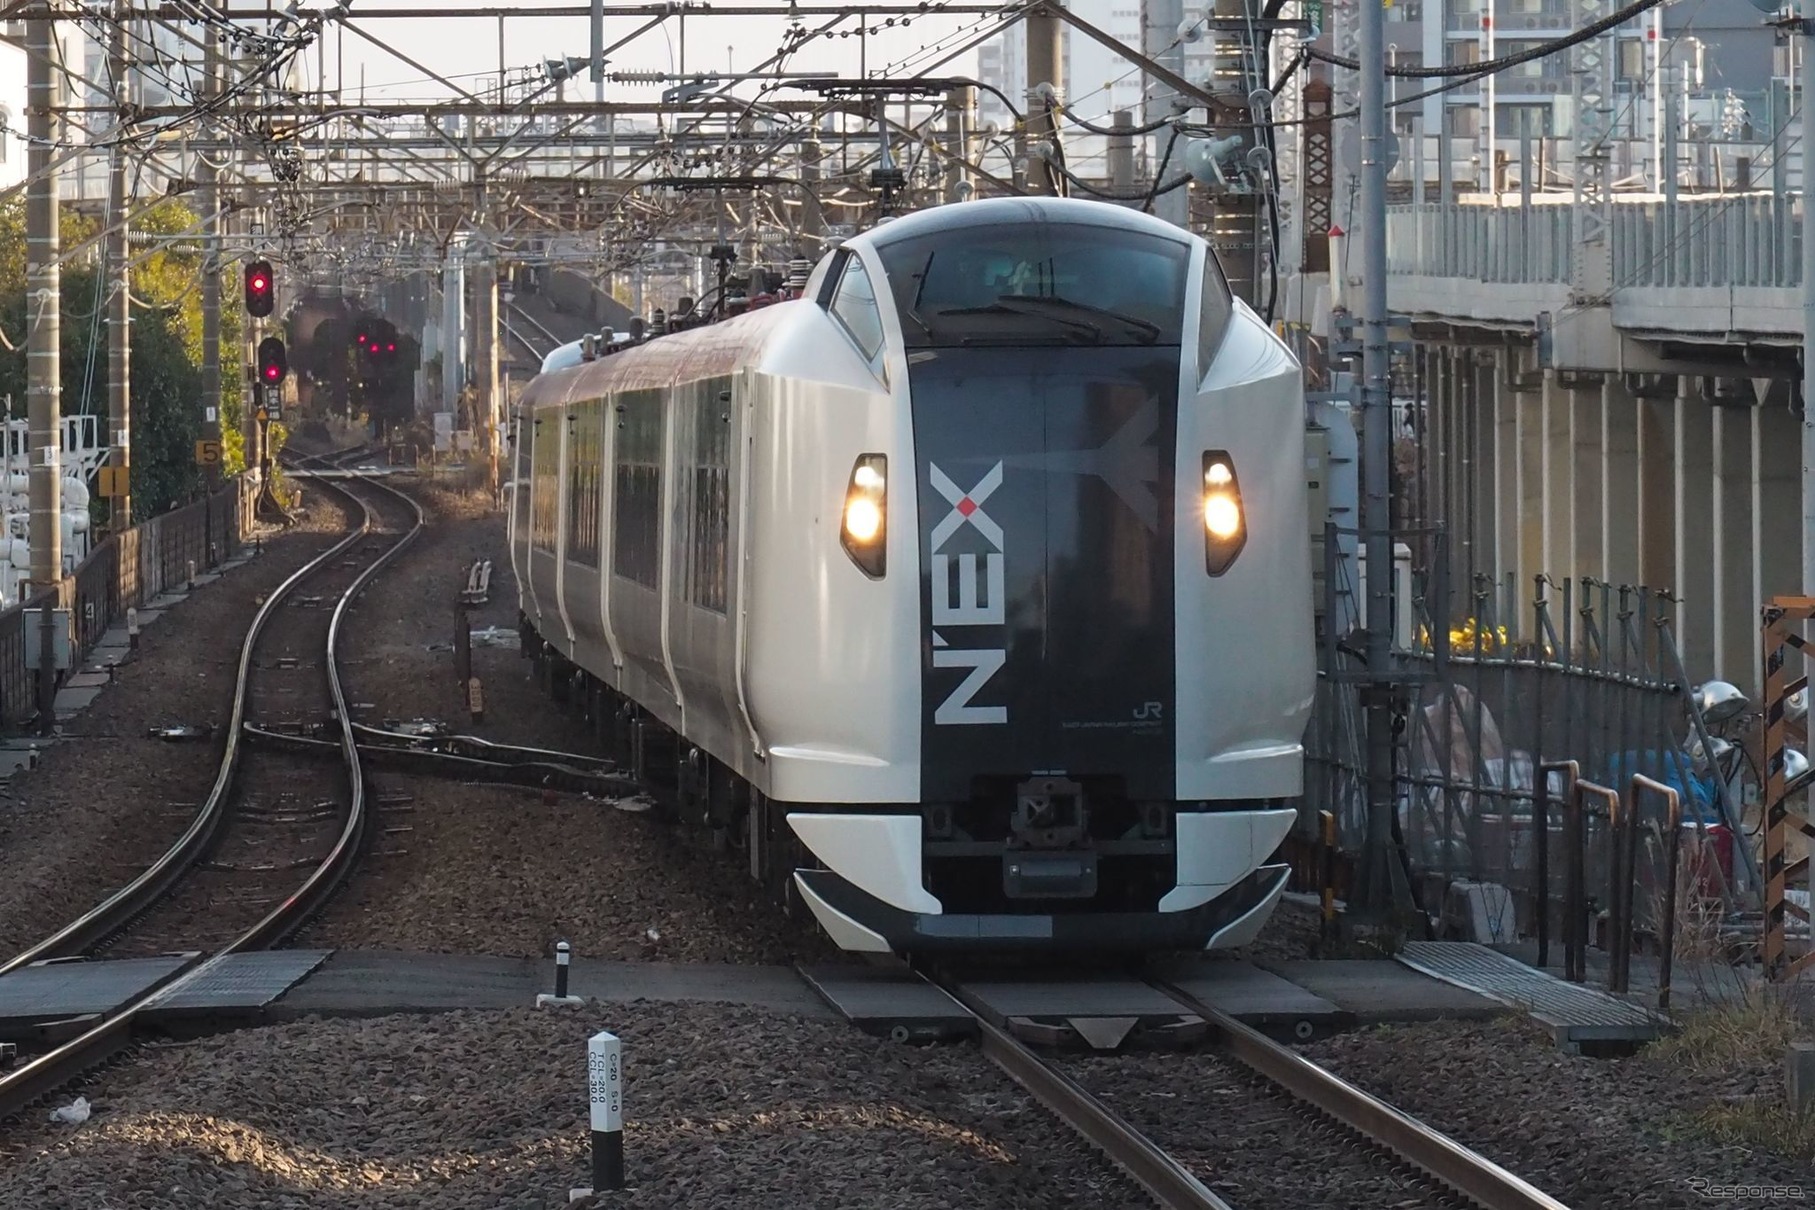 5月1日から日中の列車を運休し、1日あたりの運行本数を7割程度削減している『成田エクスプレス』。2019年は22万人だったGW期間中の利用者は、わずか0.3万人に留まる惨状に。JR東日本では次いで『踊り子』などの伊豆特急が2%に留まった。